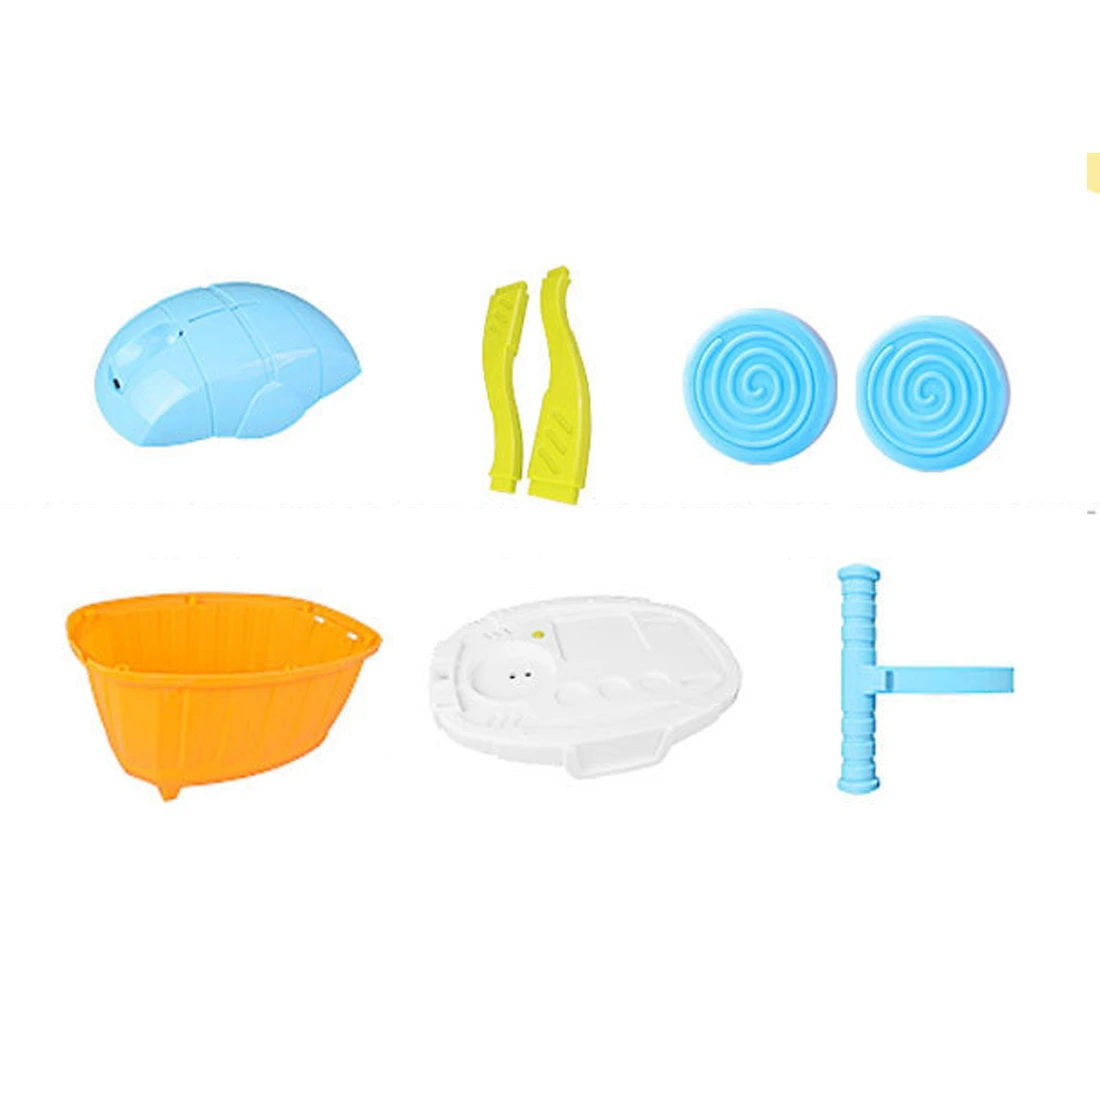 1 Набор детского моделирования набор кухонных столовых приборов попкорн десертная тележка развивающие игрушки набор